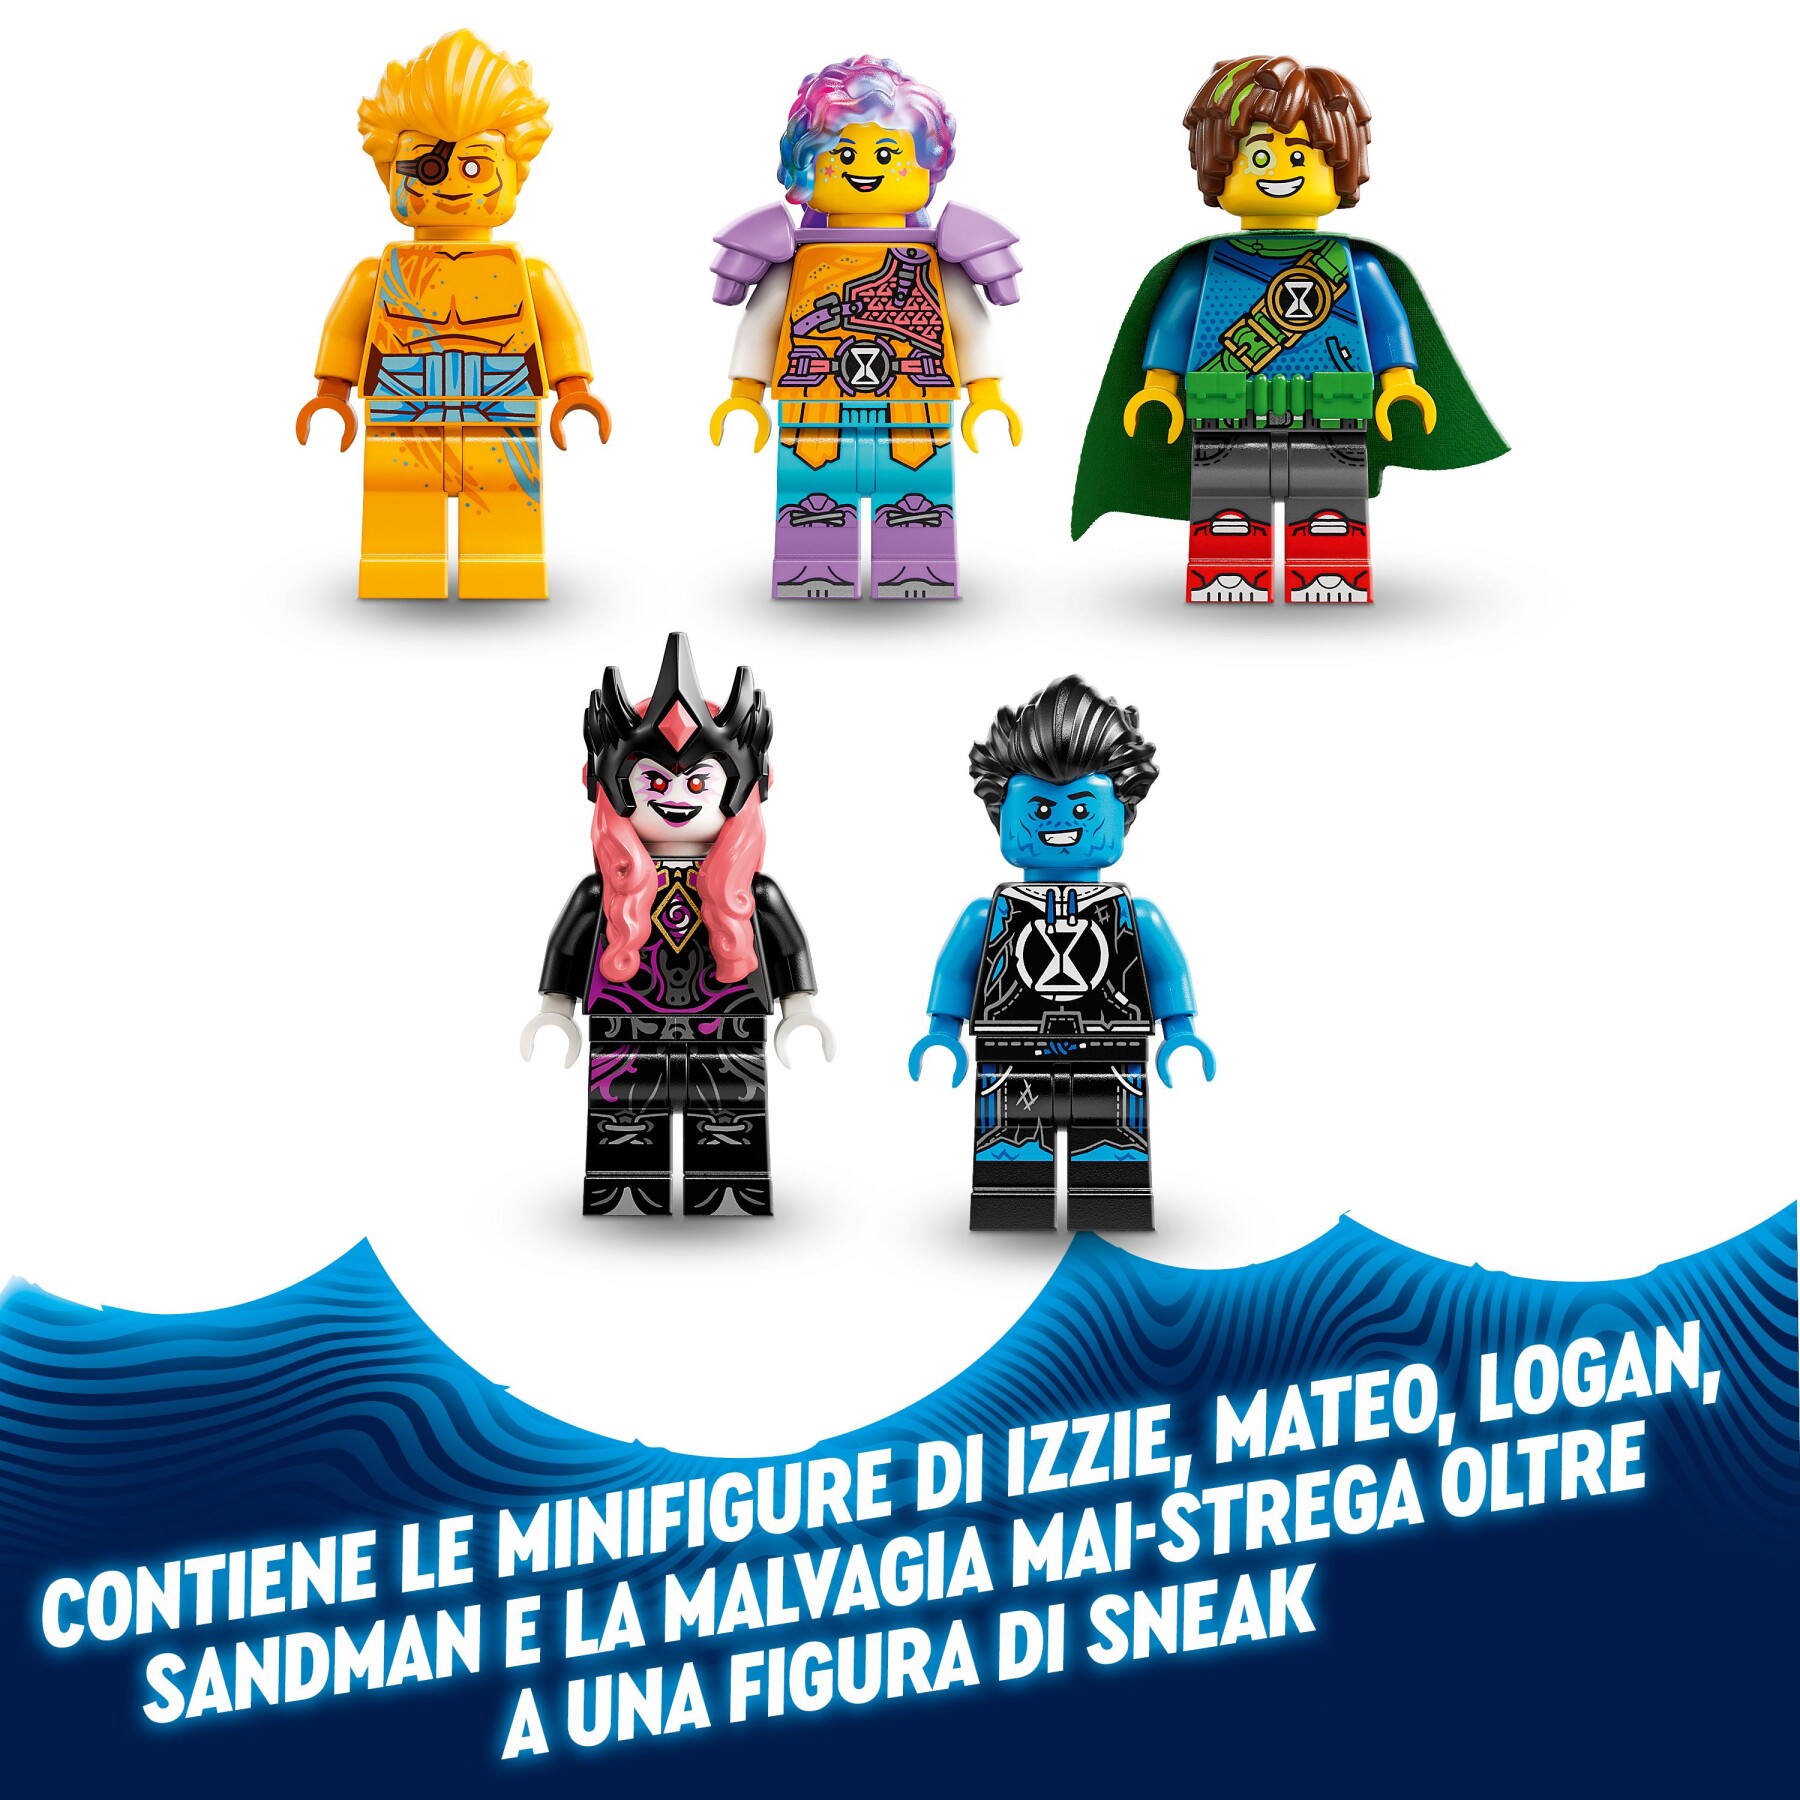 Lego dreamzzz 71477 la torre di sandman, castello giocattolo trasformabile con personaggi, regalo per bambini di 9+ anni - LEGO DREAMZZZ